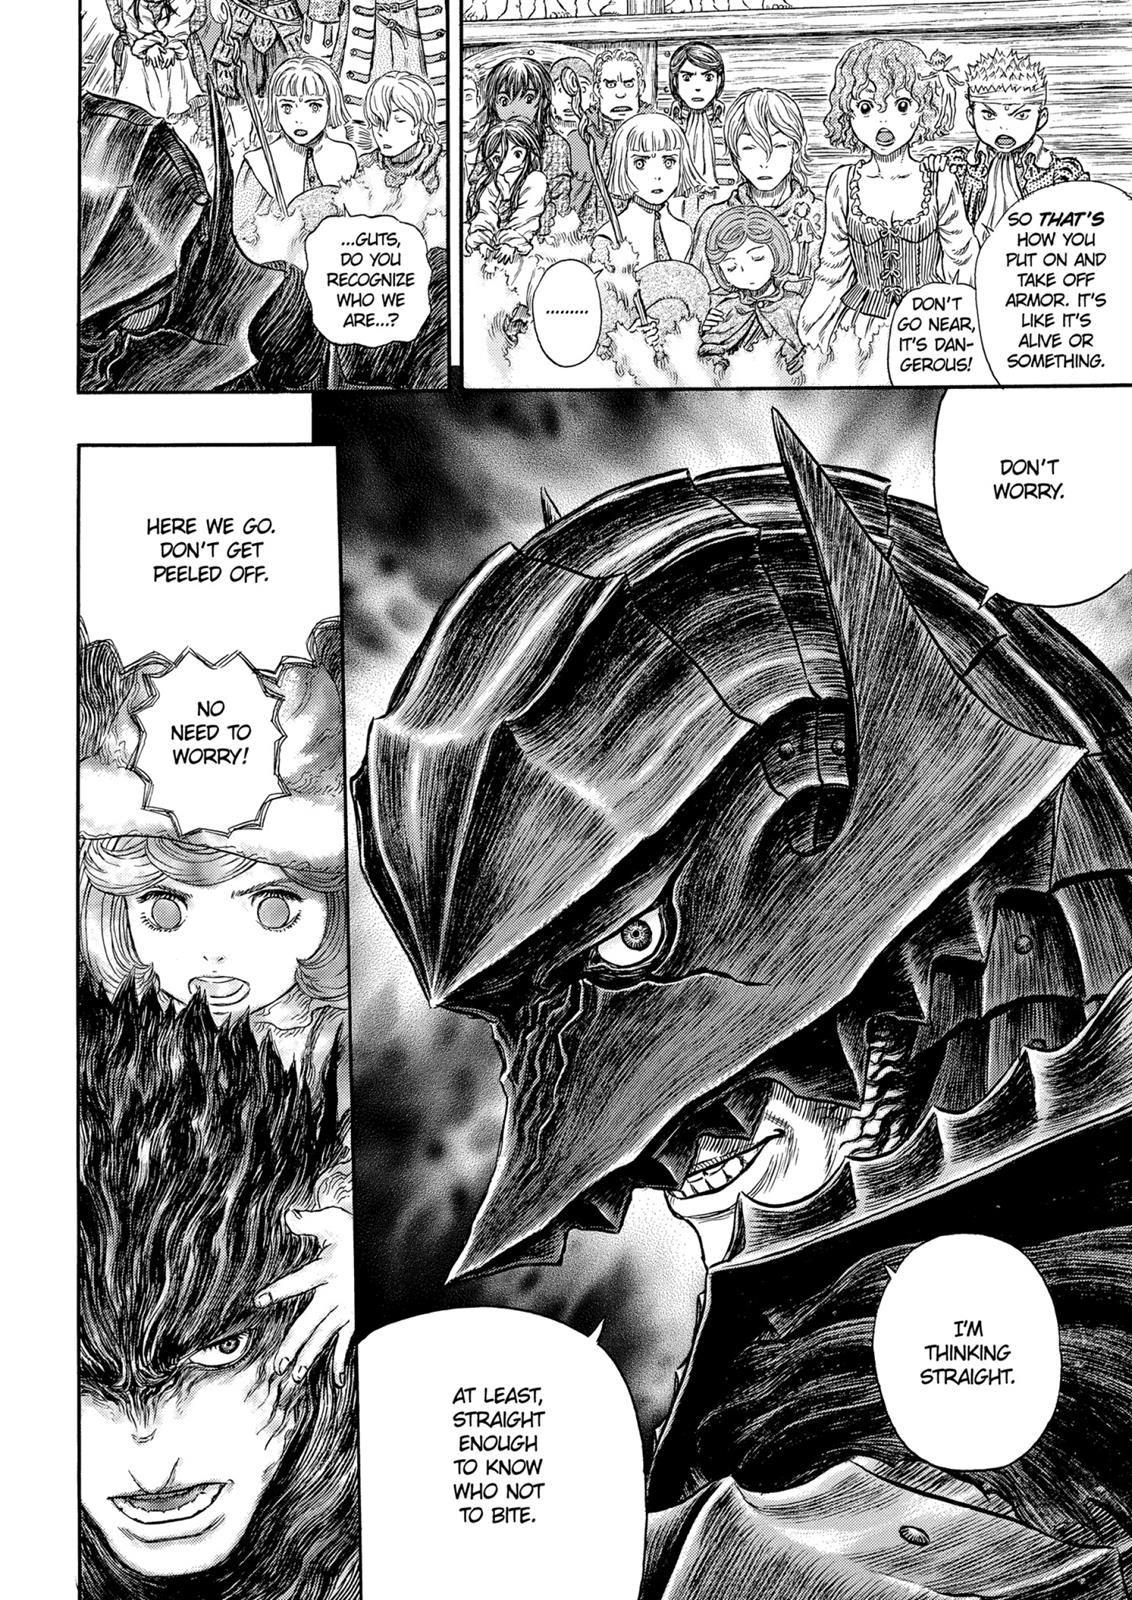 Berserk Manga Chapter 318 image 14